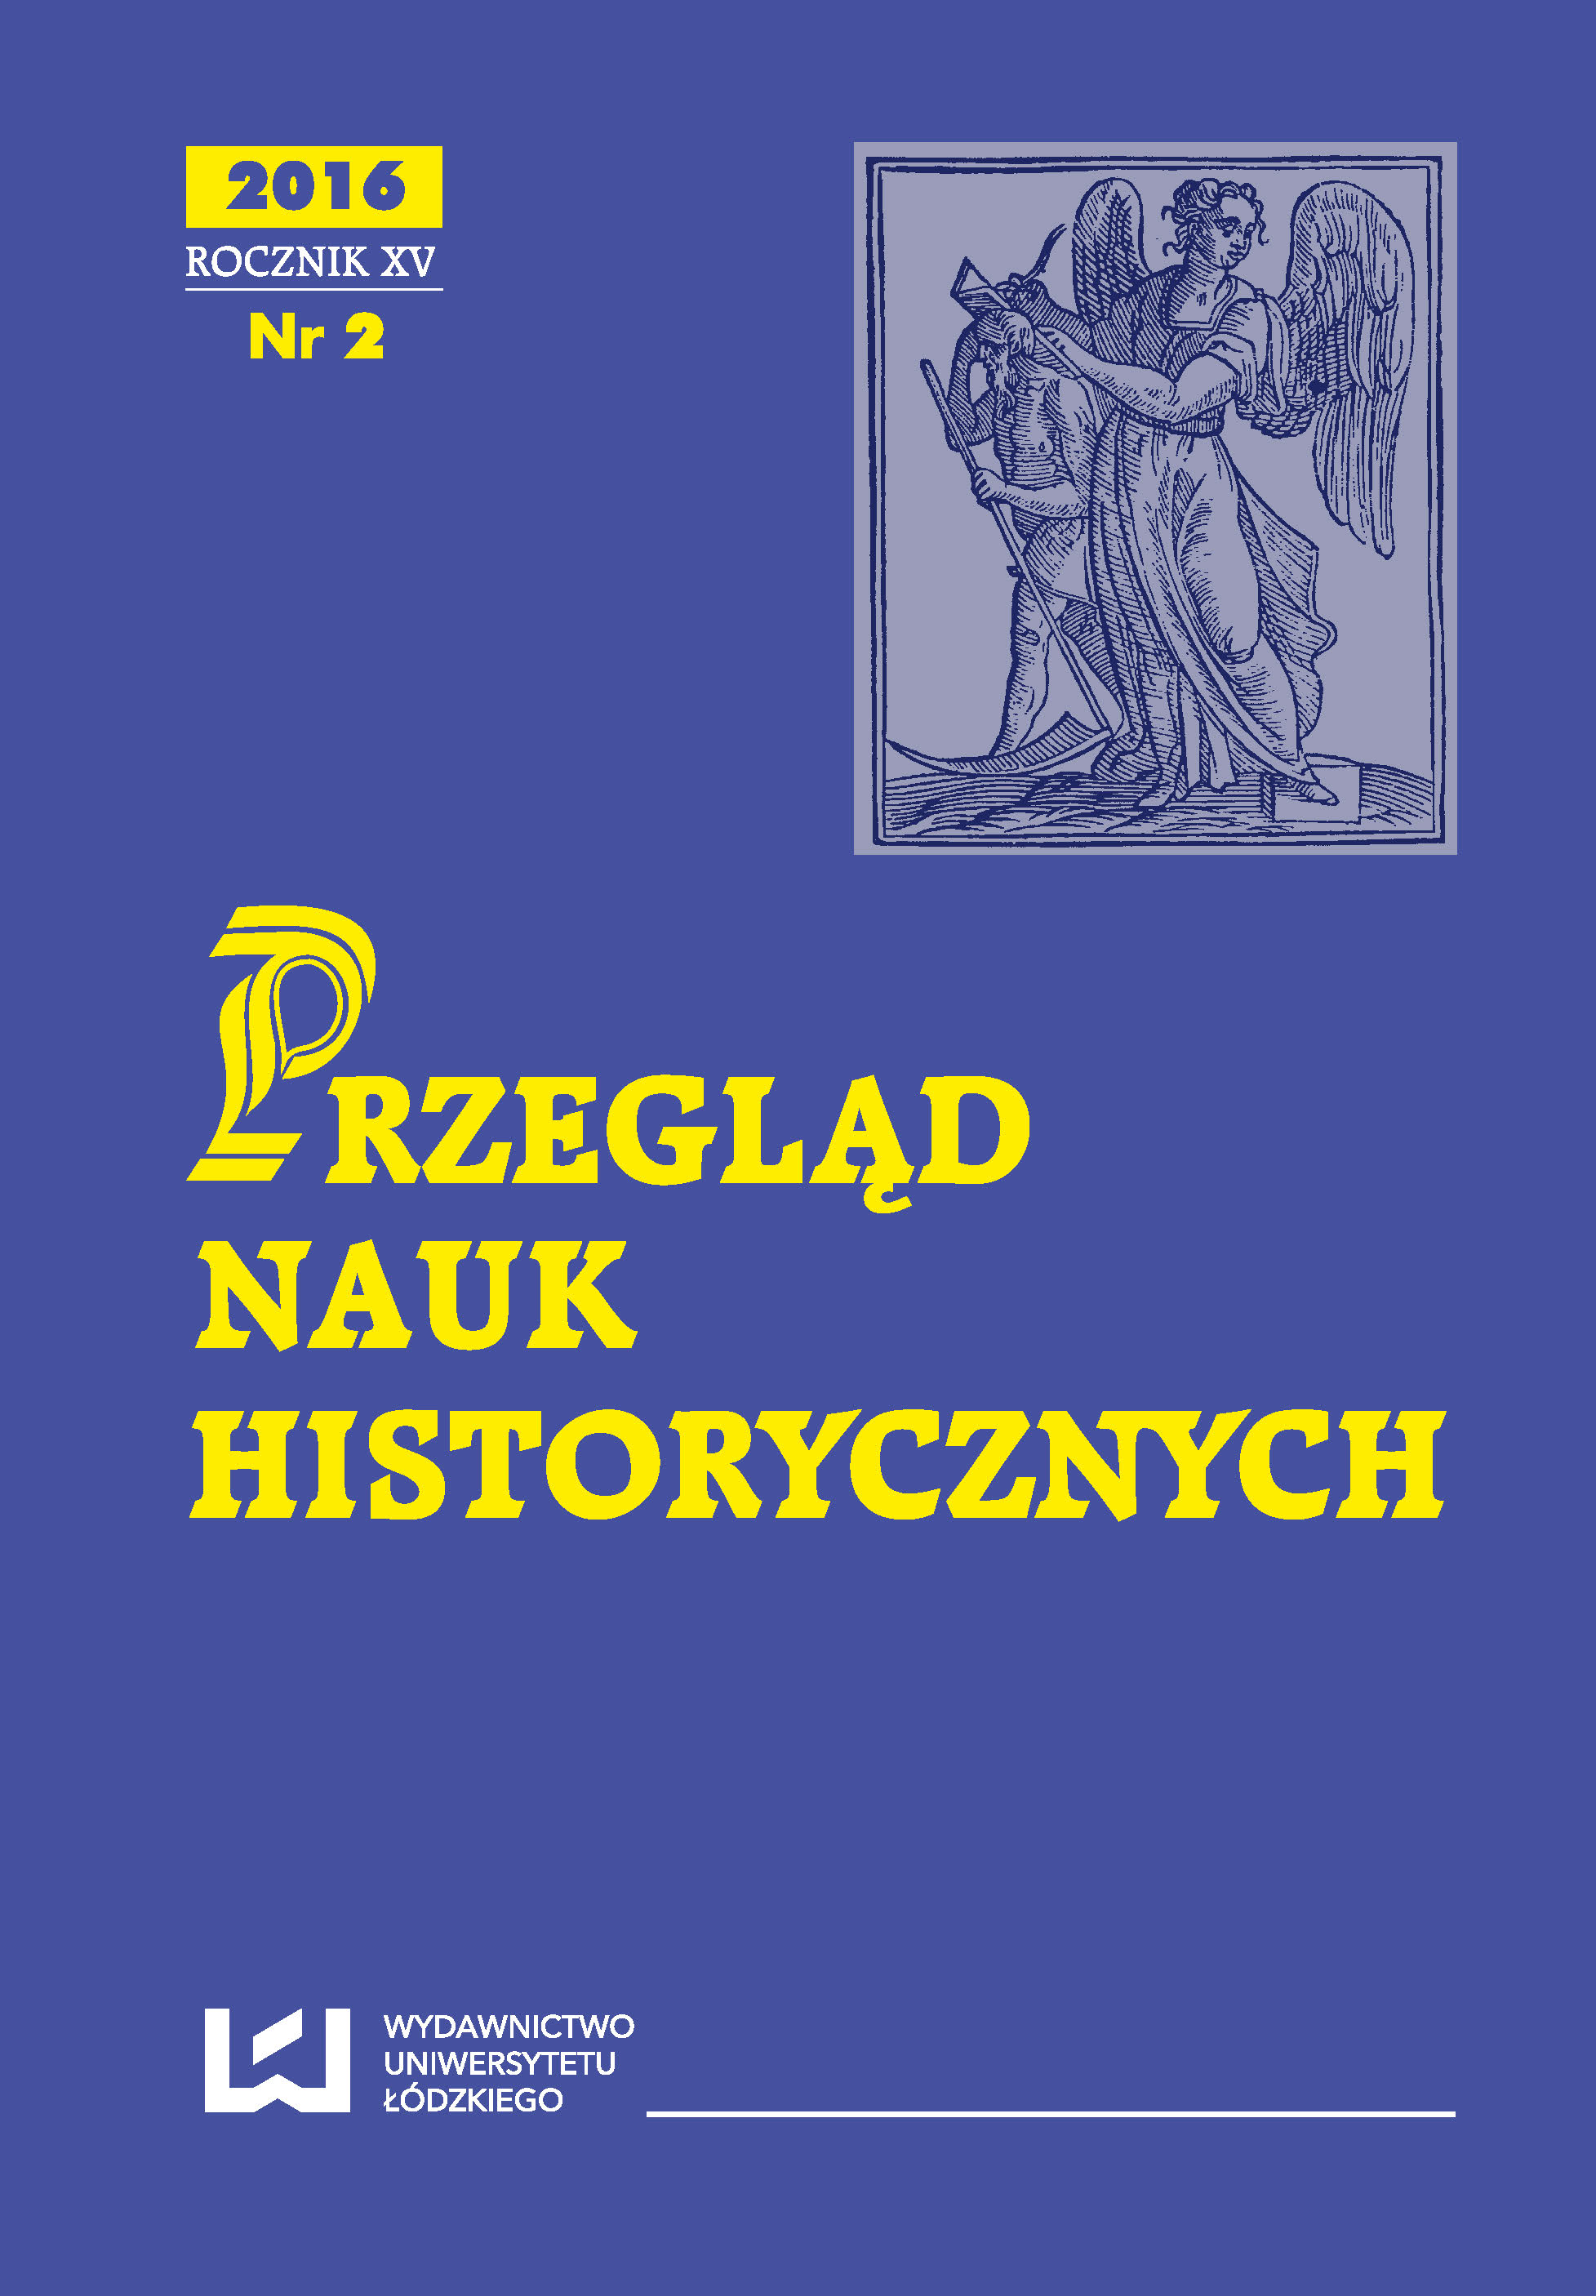 Prince Joseph Poniatowski in Kazimierz Bartoszewicz’ works Cover Image